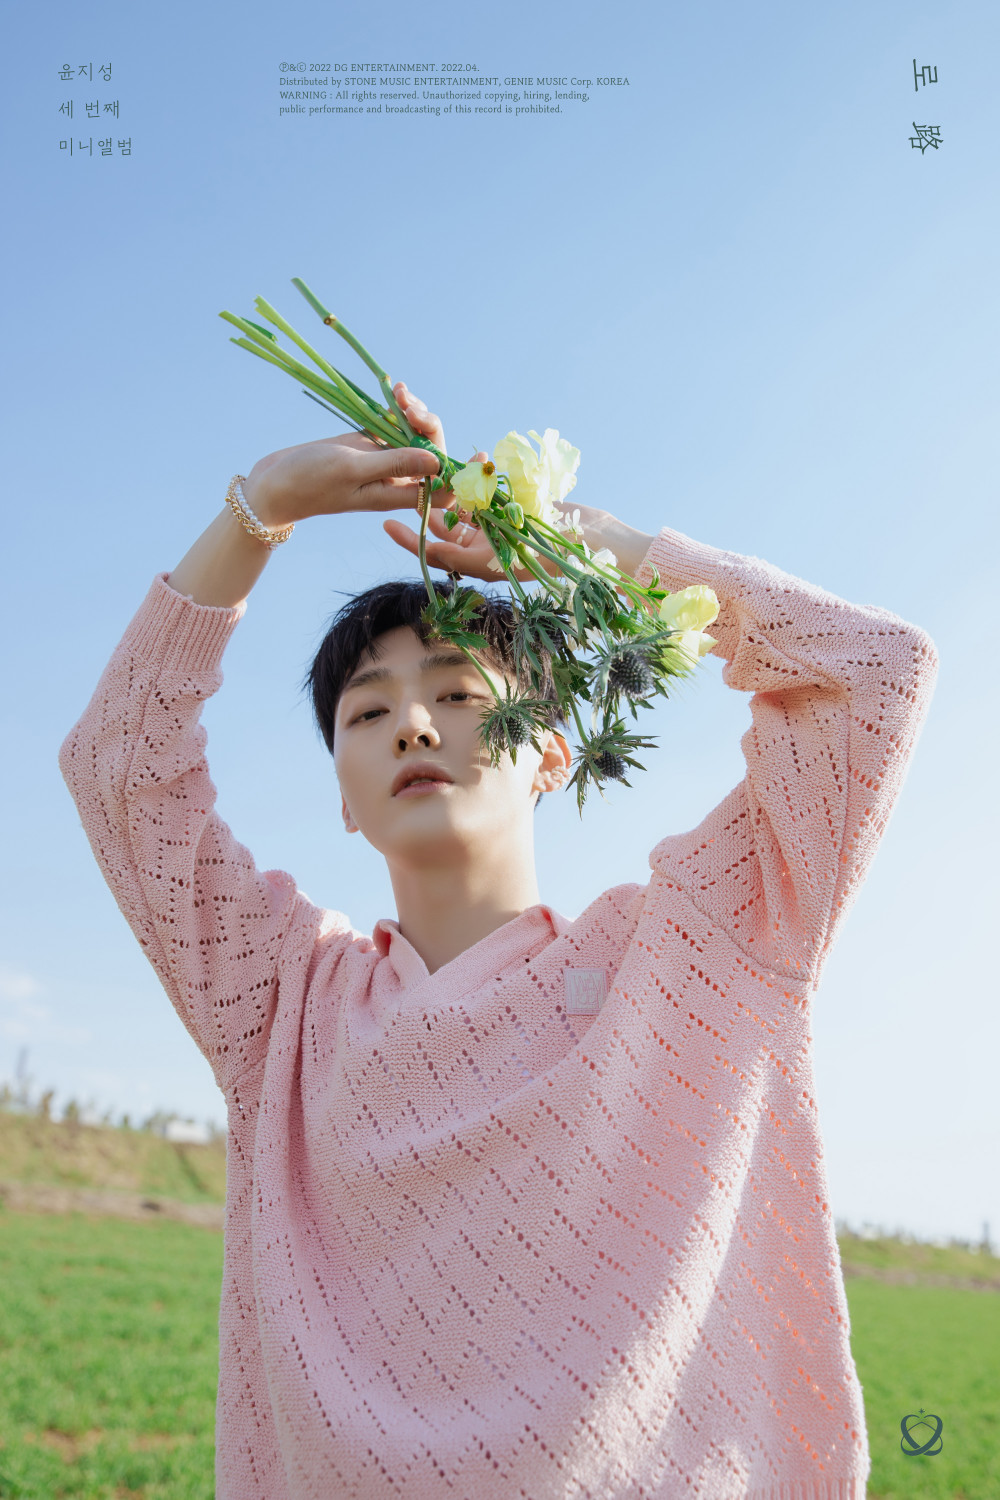 [Камбэк] Юн Джисон мини-альбом «Bloom»: музыкальный клип "Florescence"